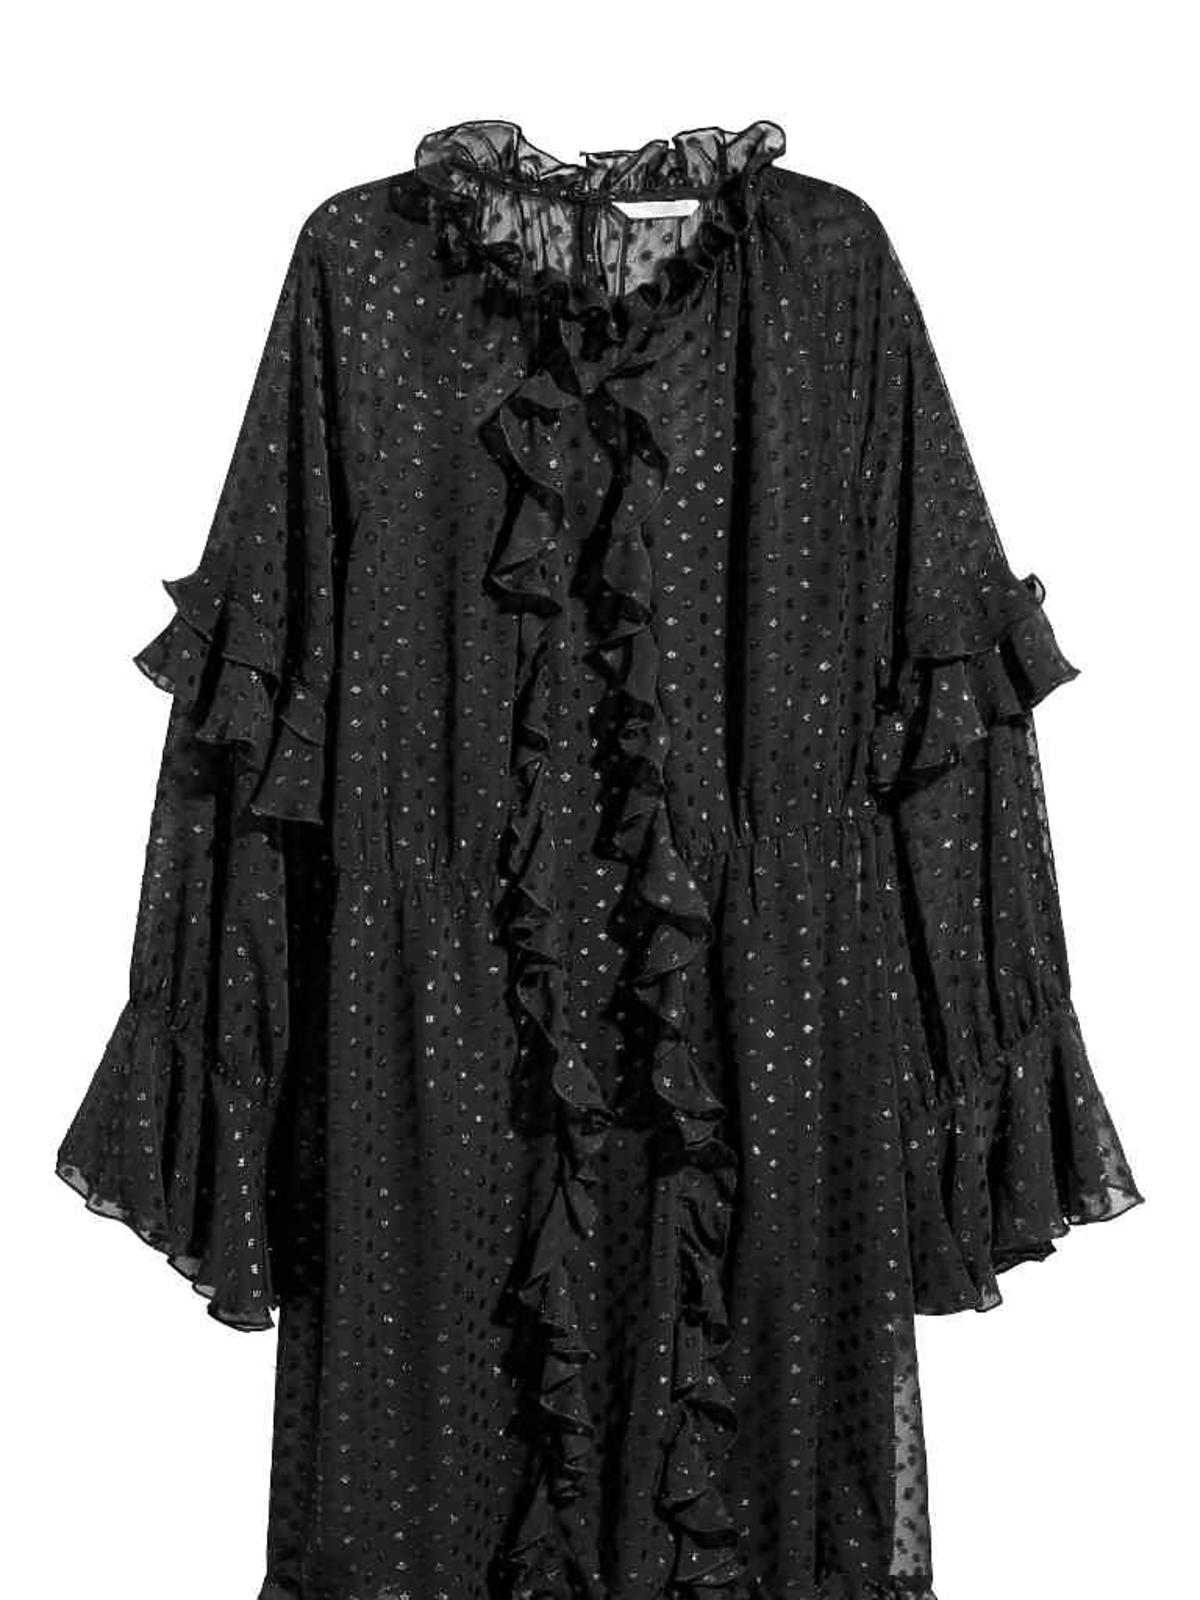 Sukienka z falbanami, H&M, 64,90 zł (129,90 zł)